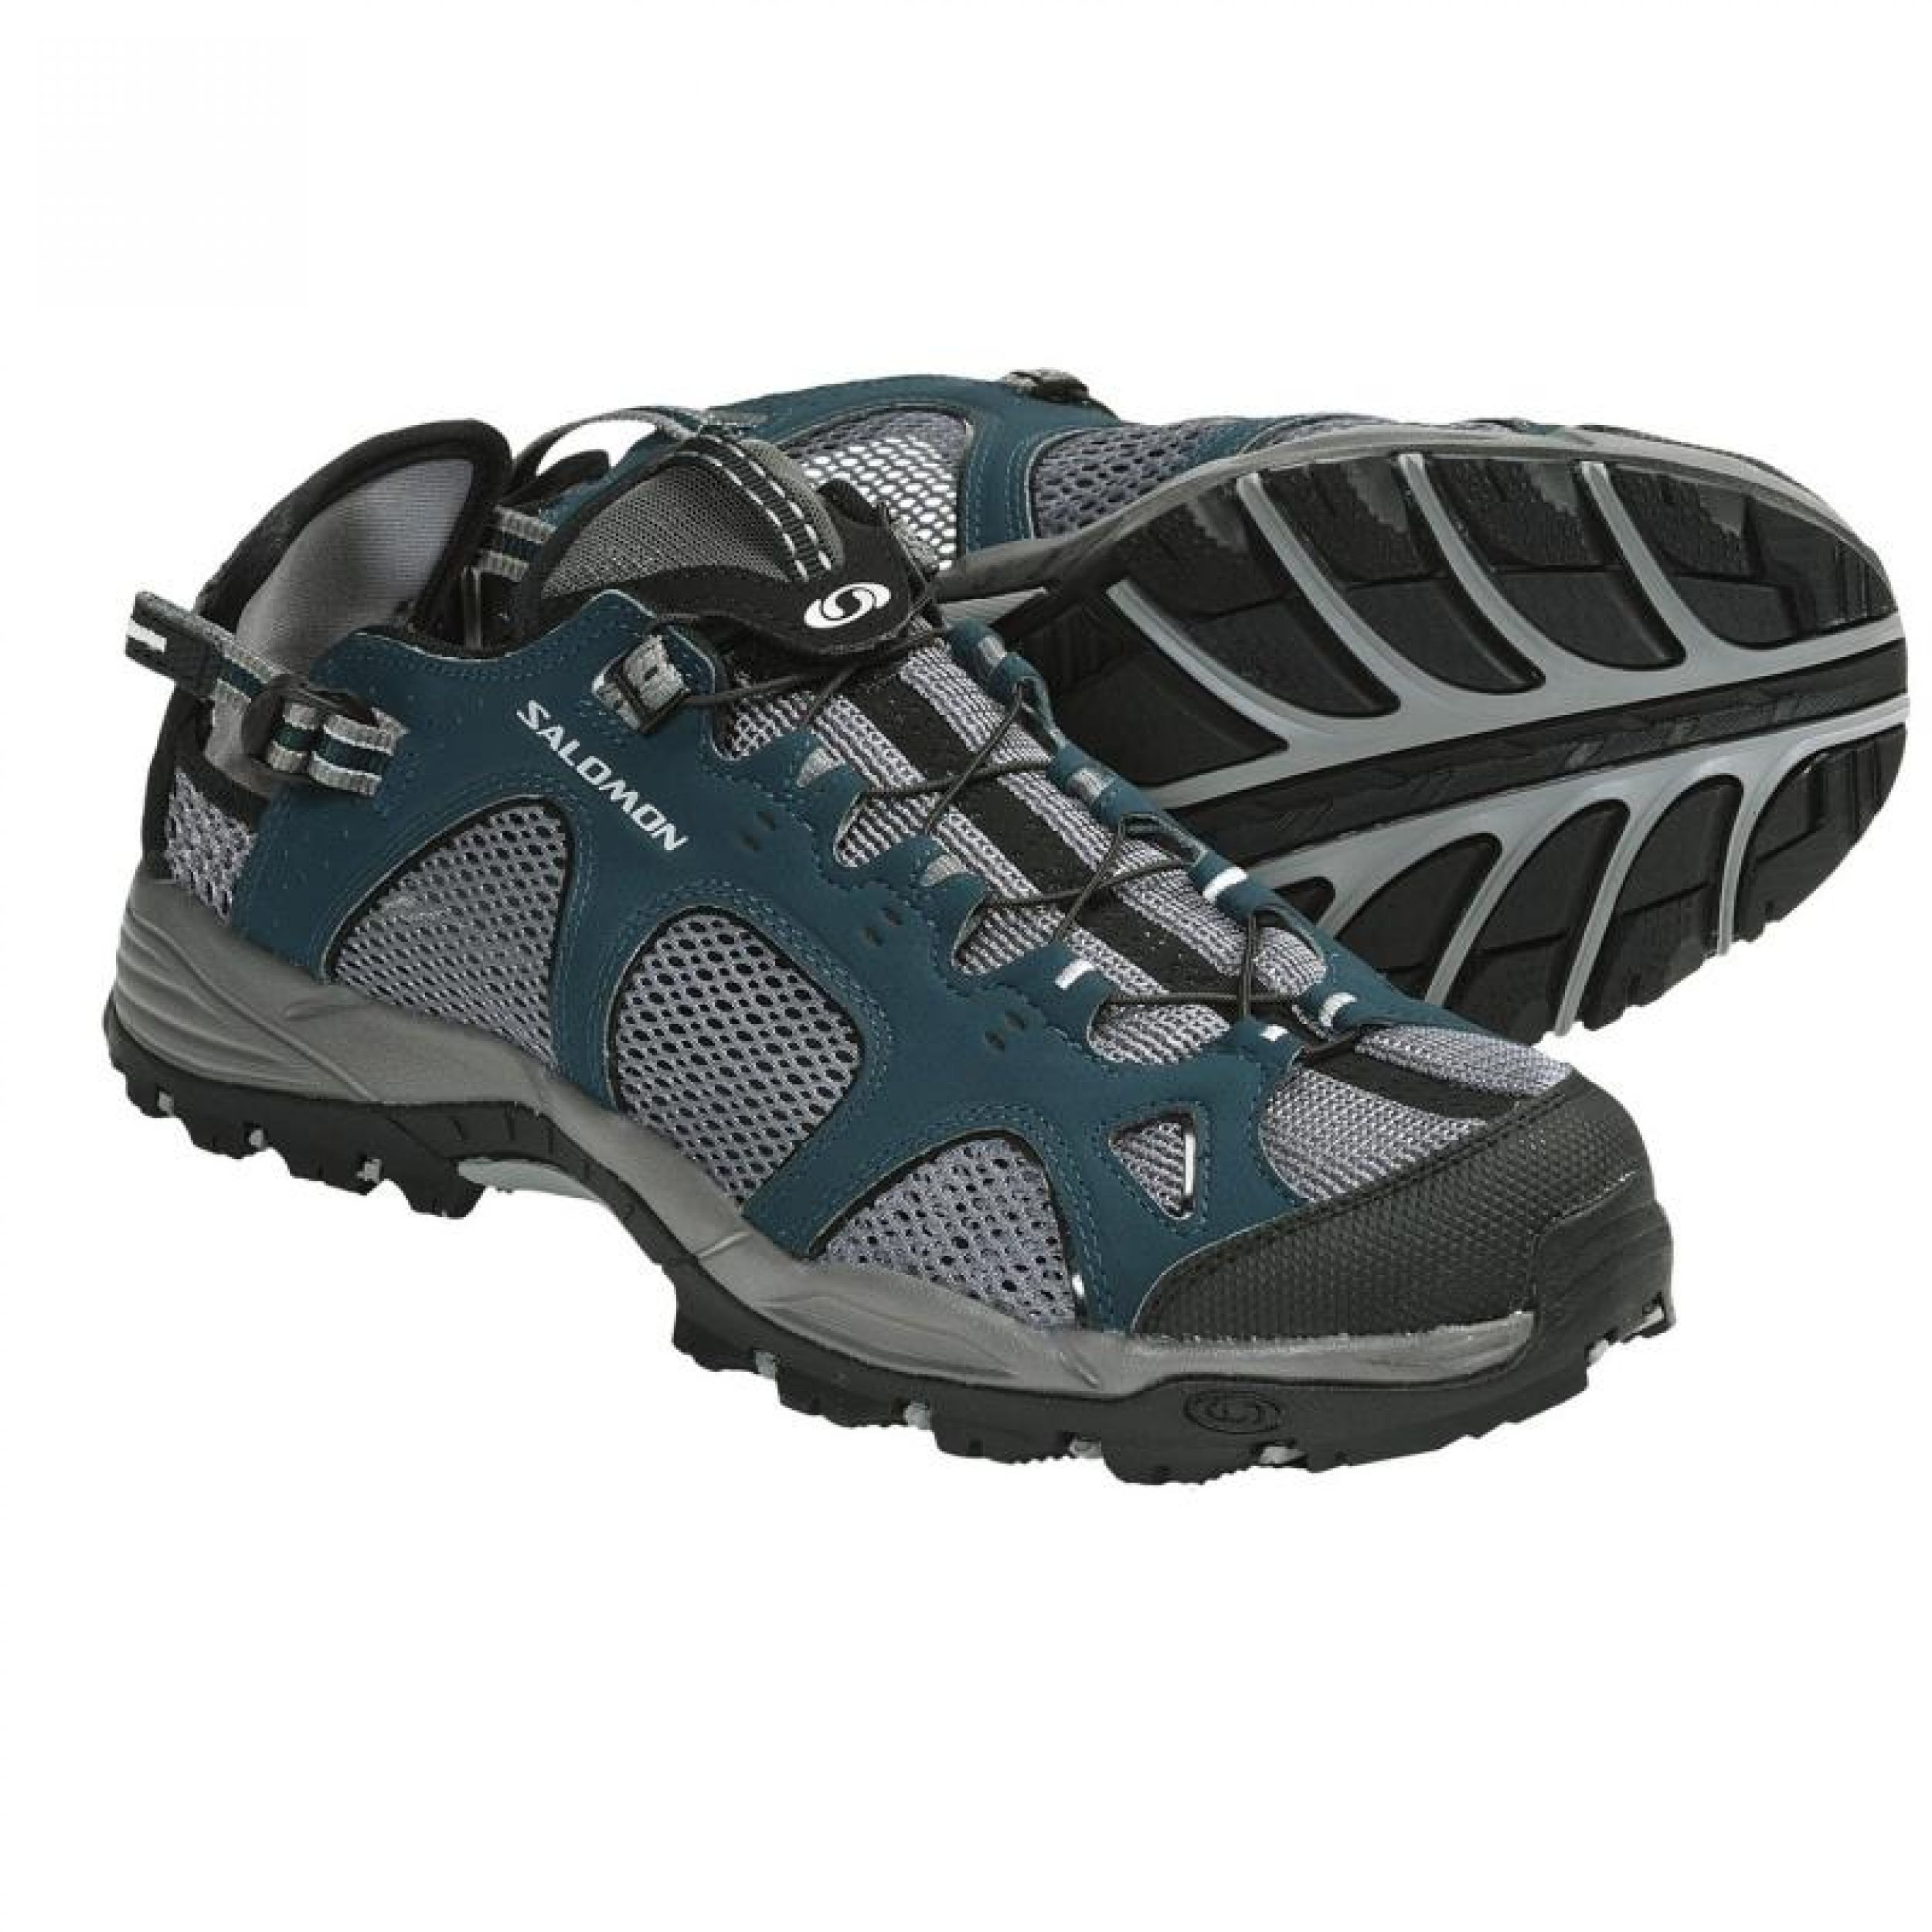 salomon-techamphibian-2-mat-shoes-for-men-in-pond-detroitt-blackp5775r_011500.3.jpg